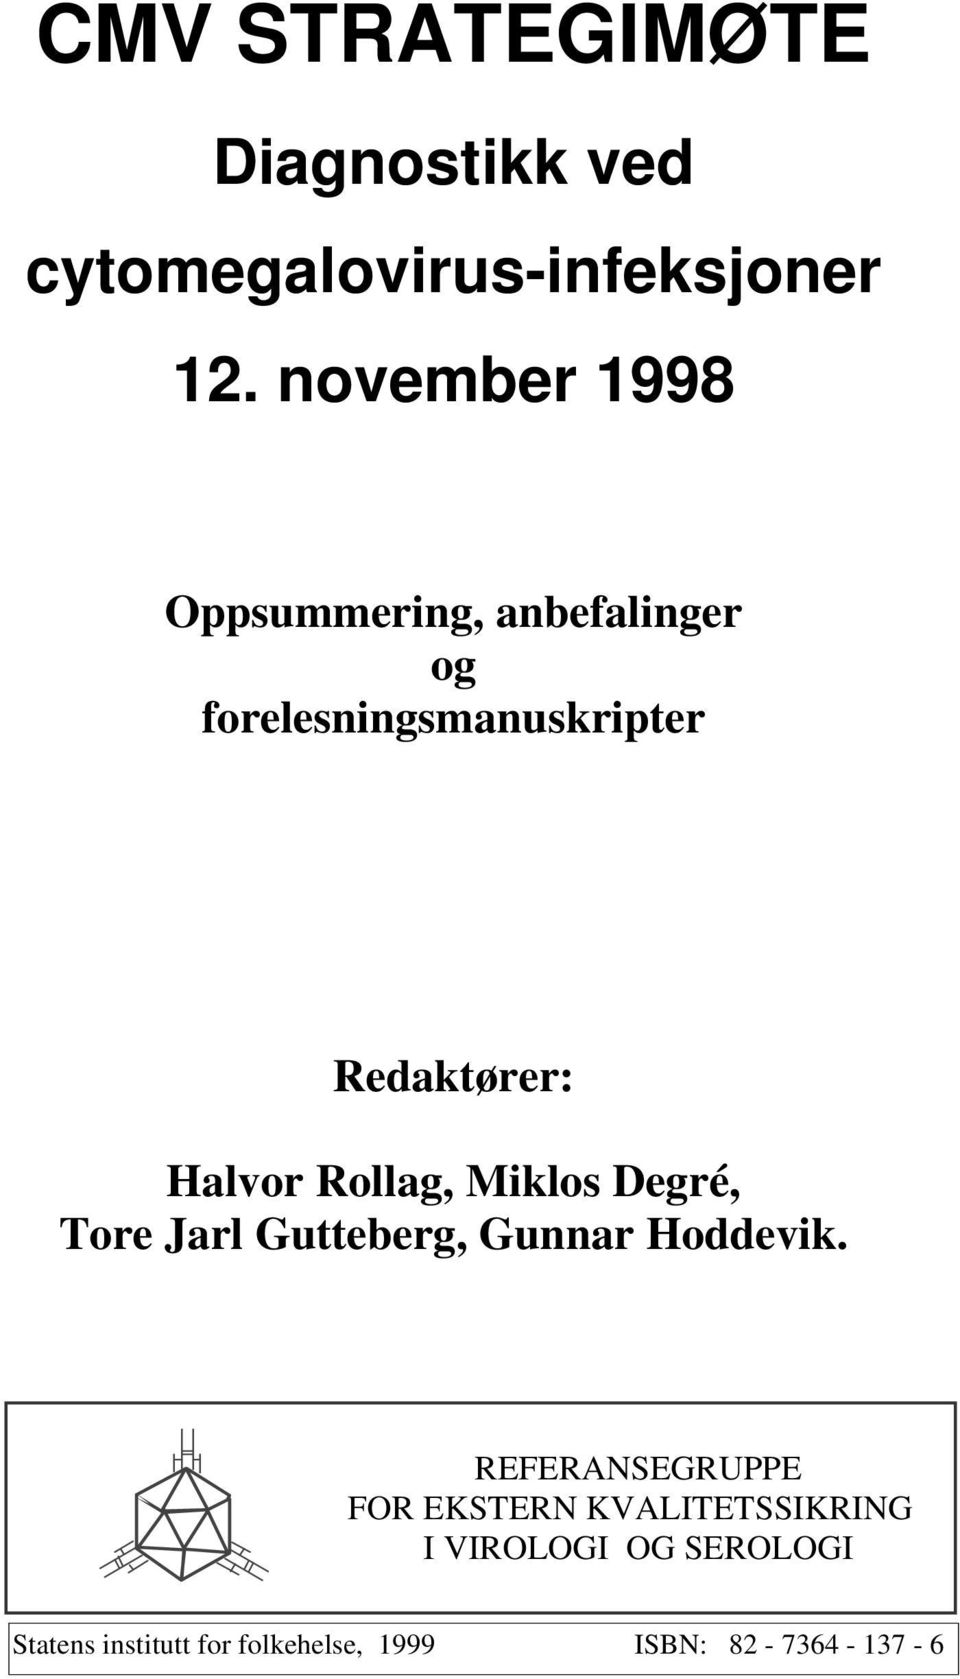 Halvor Rollag, Miklos Degré, Tore Jarl Gutteberg, Gunnar Hoddevik.